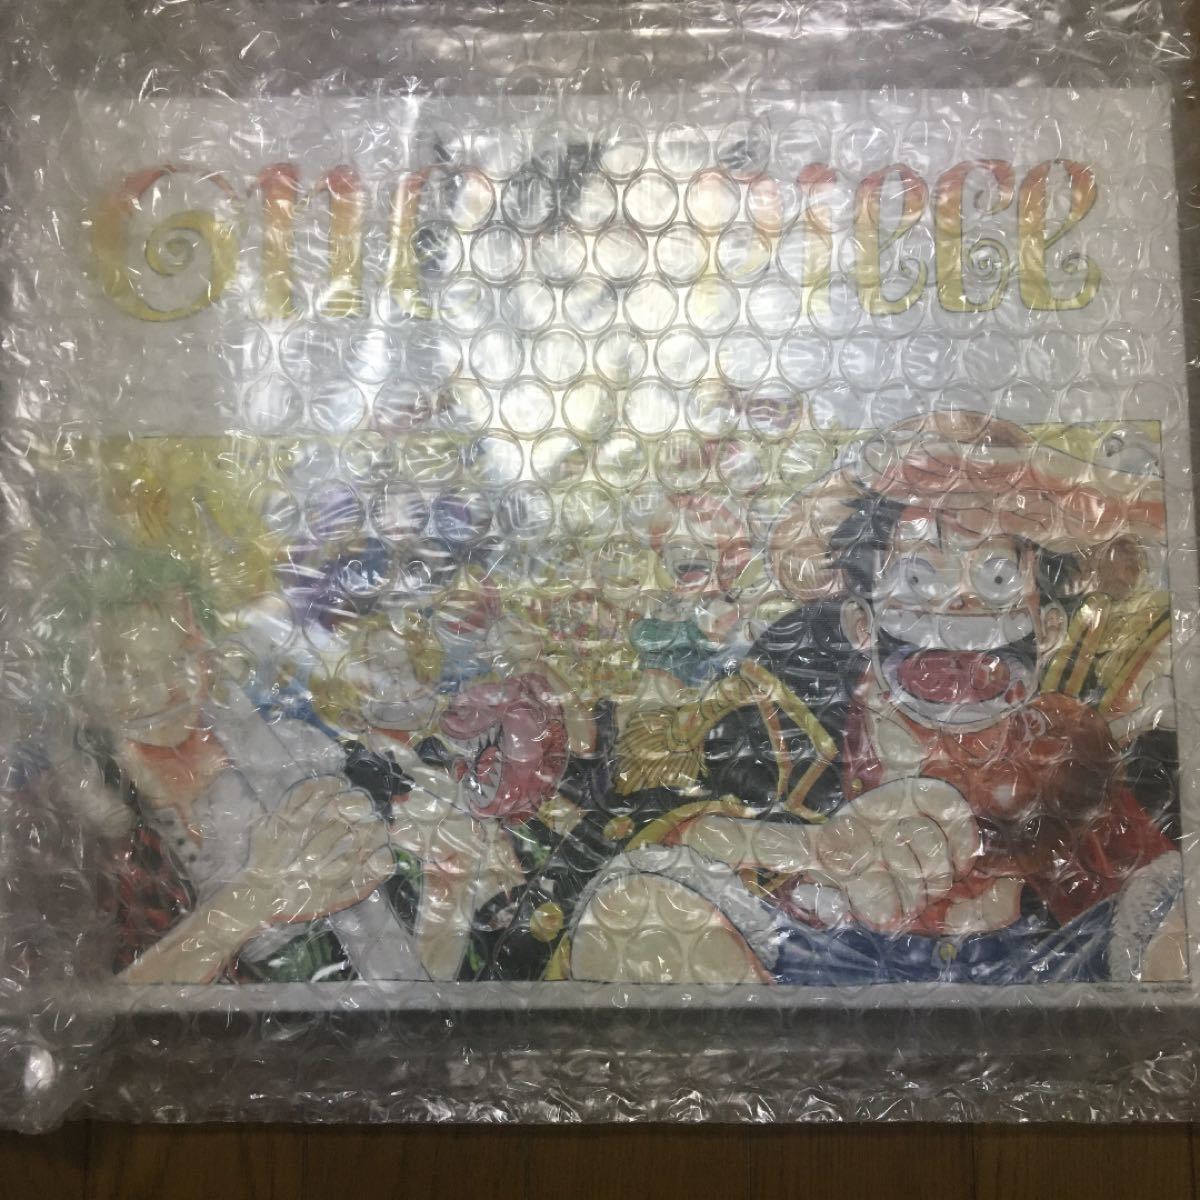 スペシャルset価格 完全受注生産 One Piece フルカラーbigアートボード セット 新商品 Gwefode Org